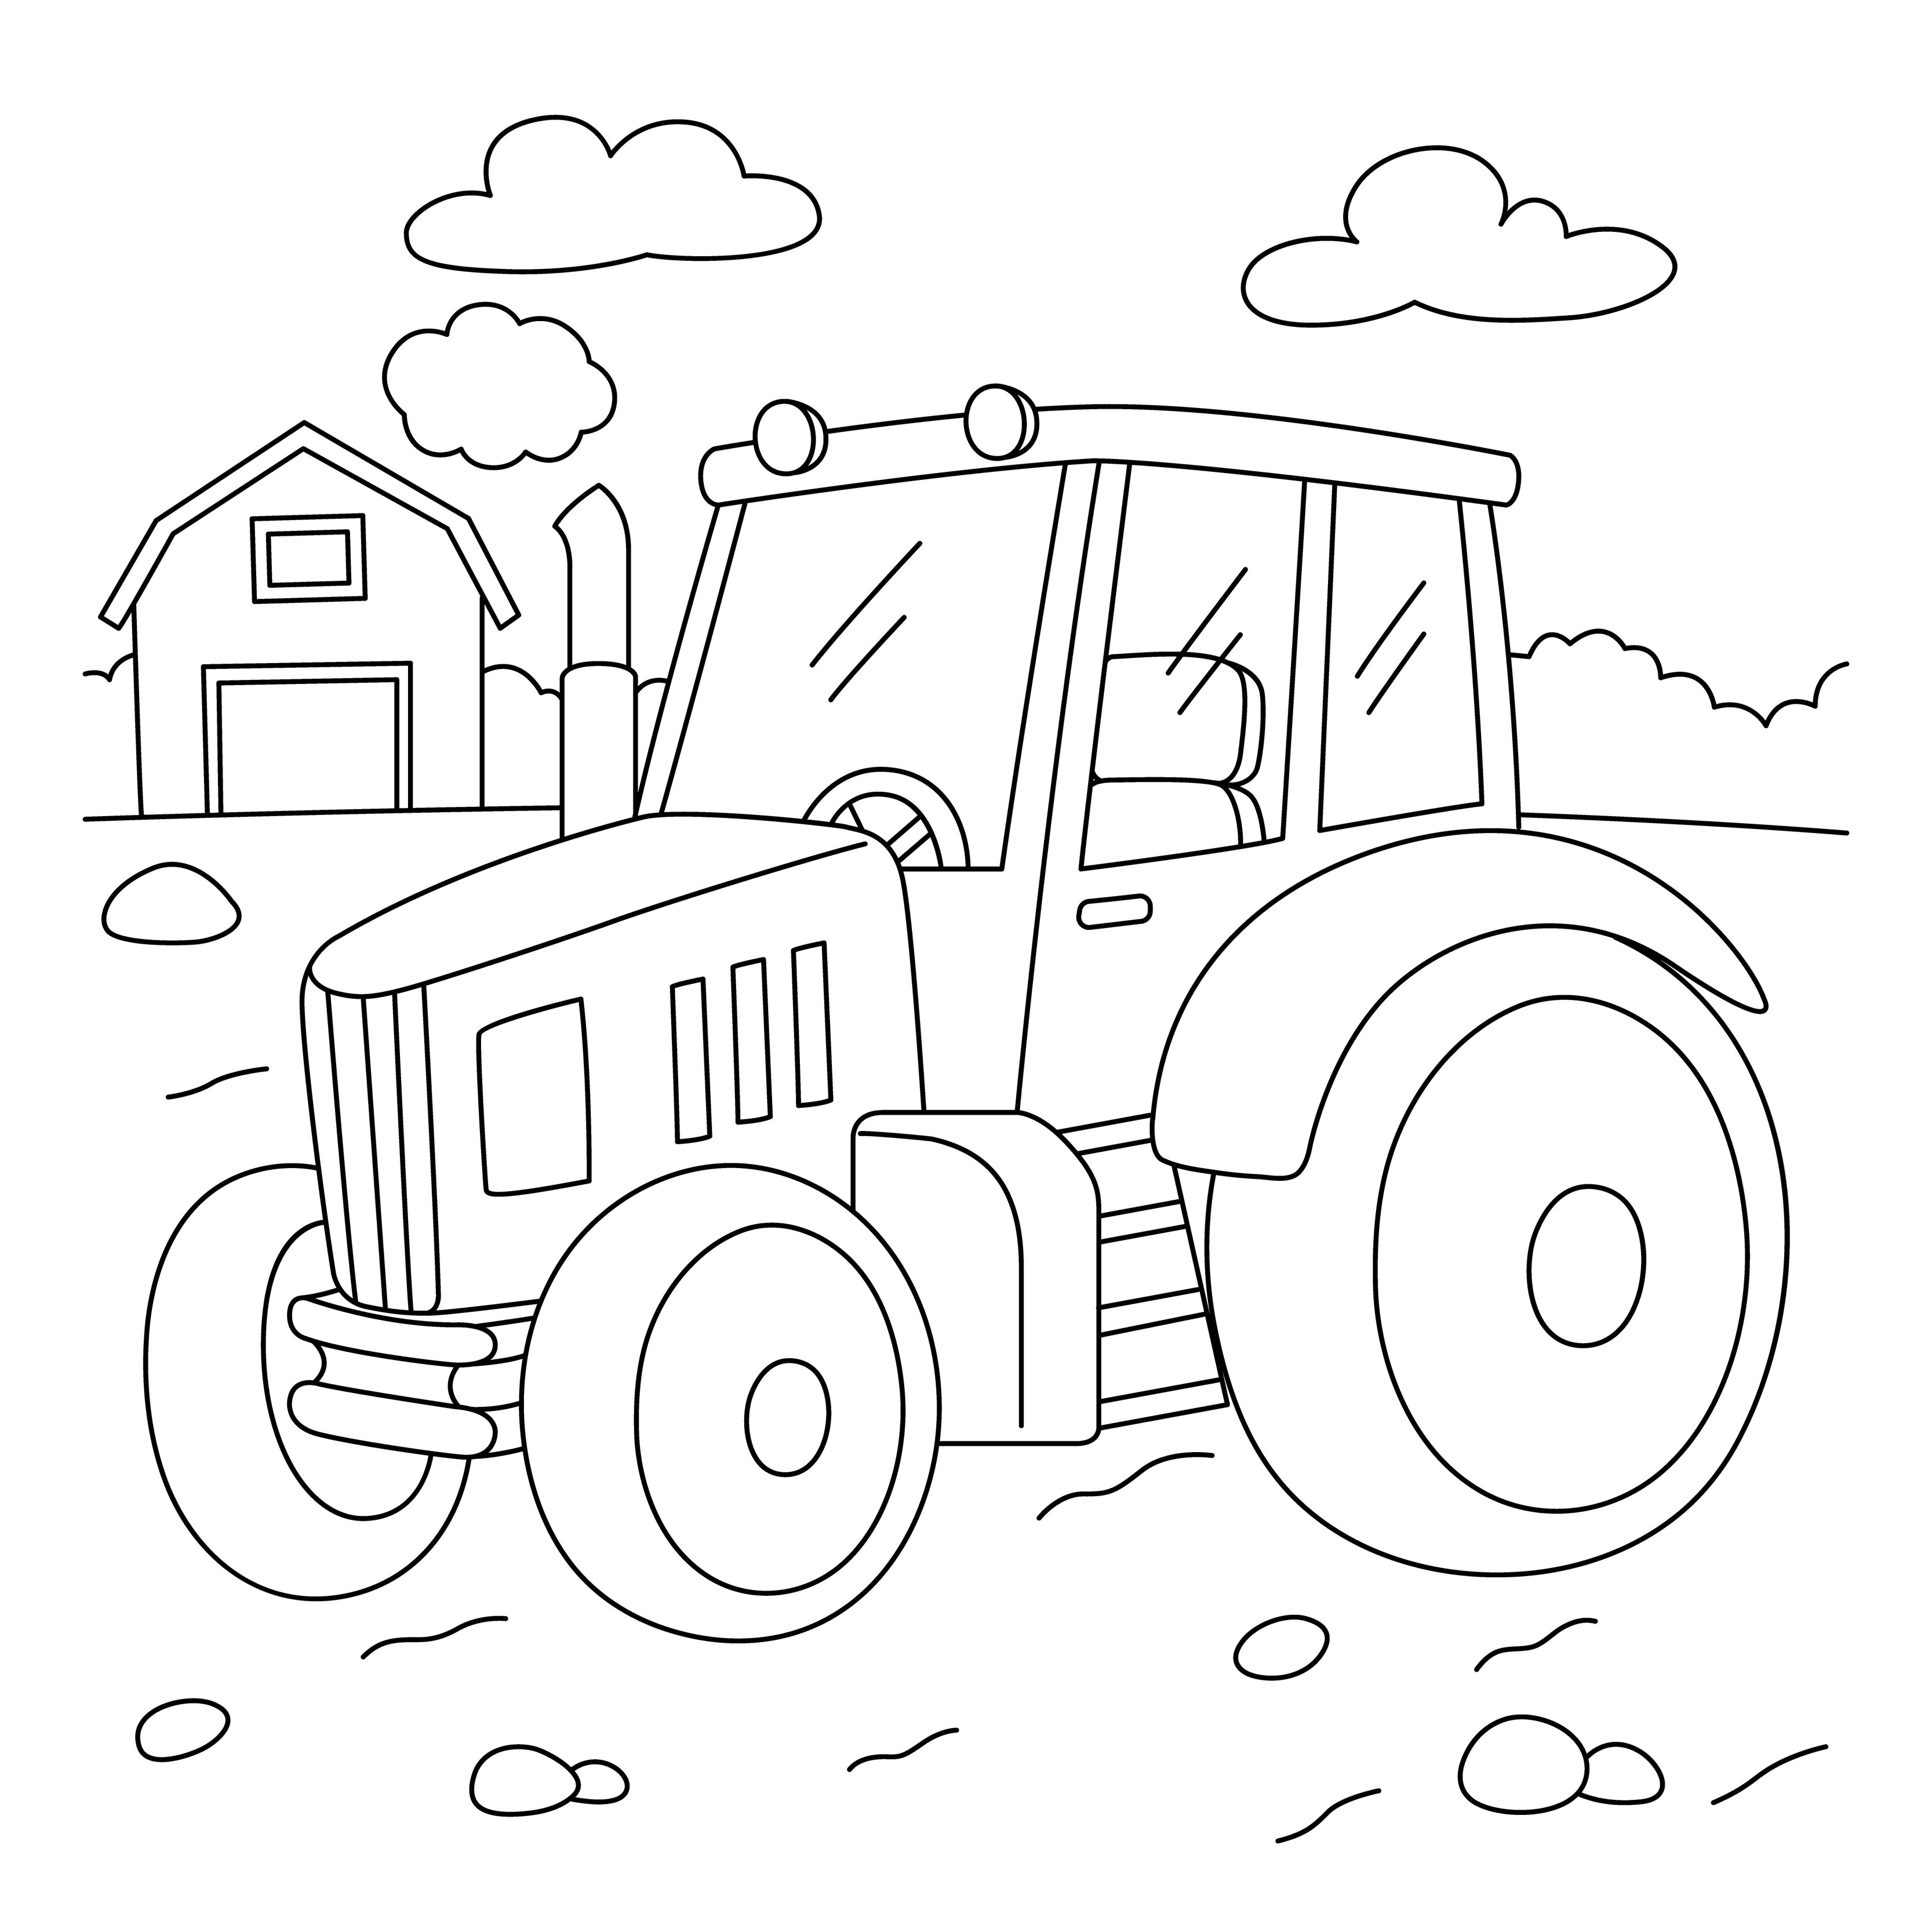 Libro: Tractores – Libro de colorear por Fella Publiching